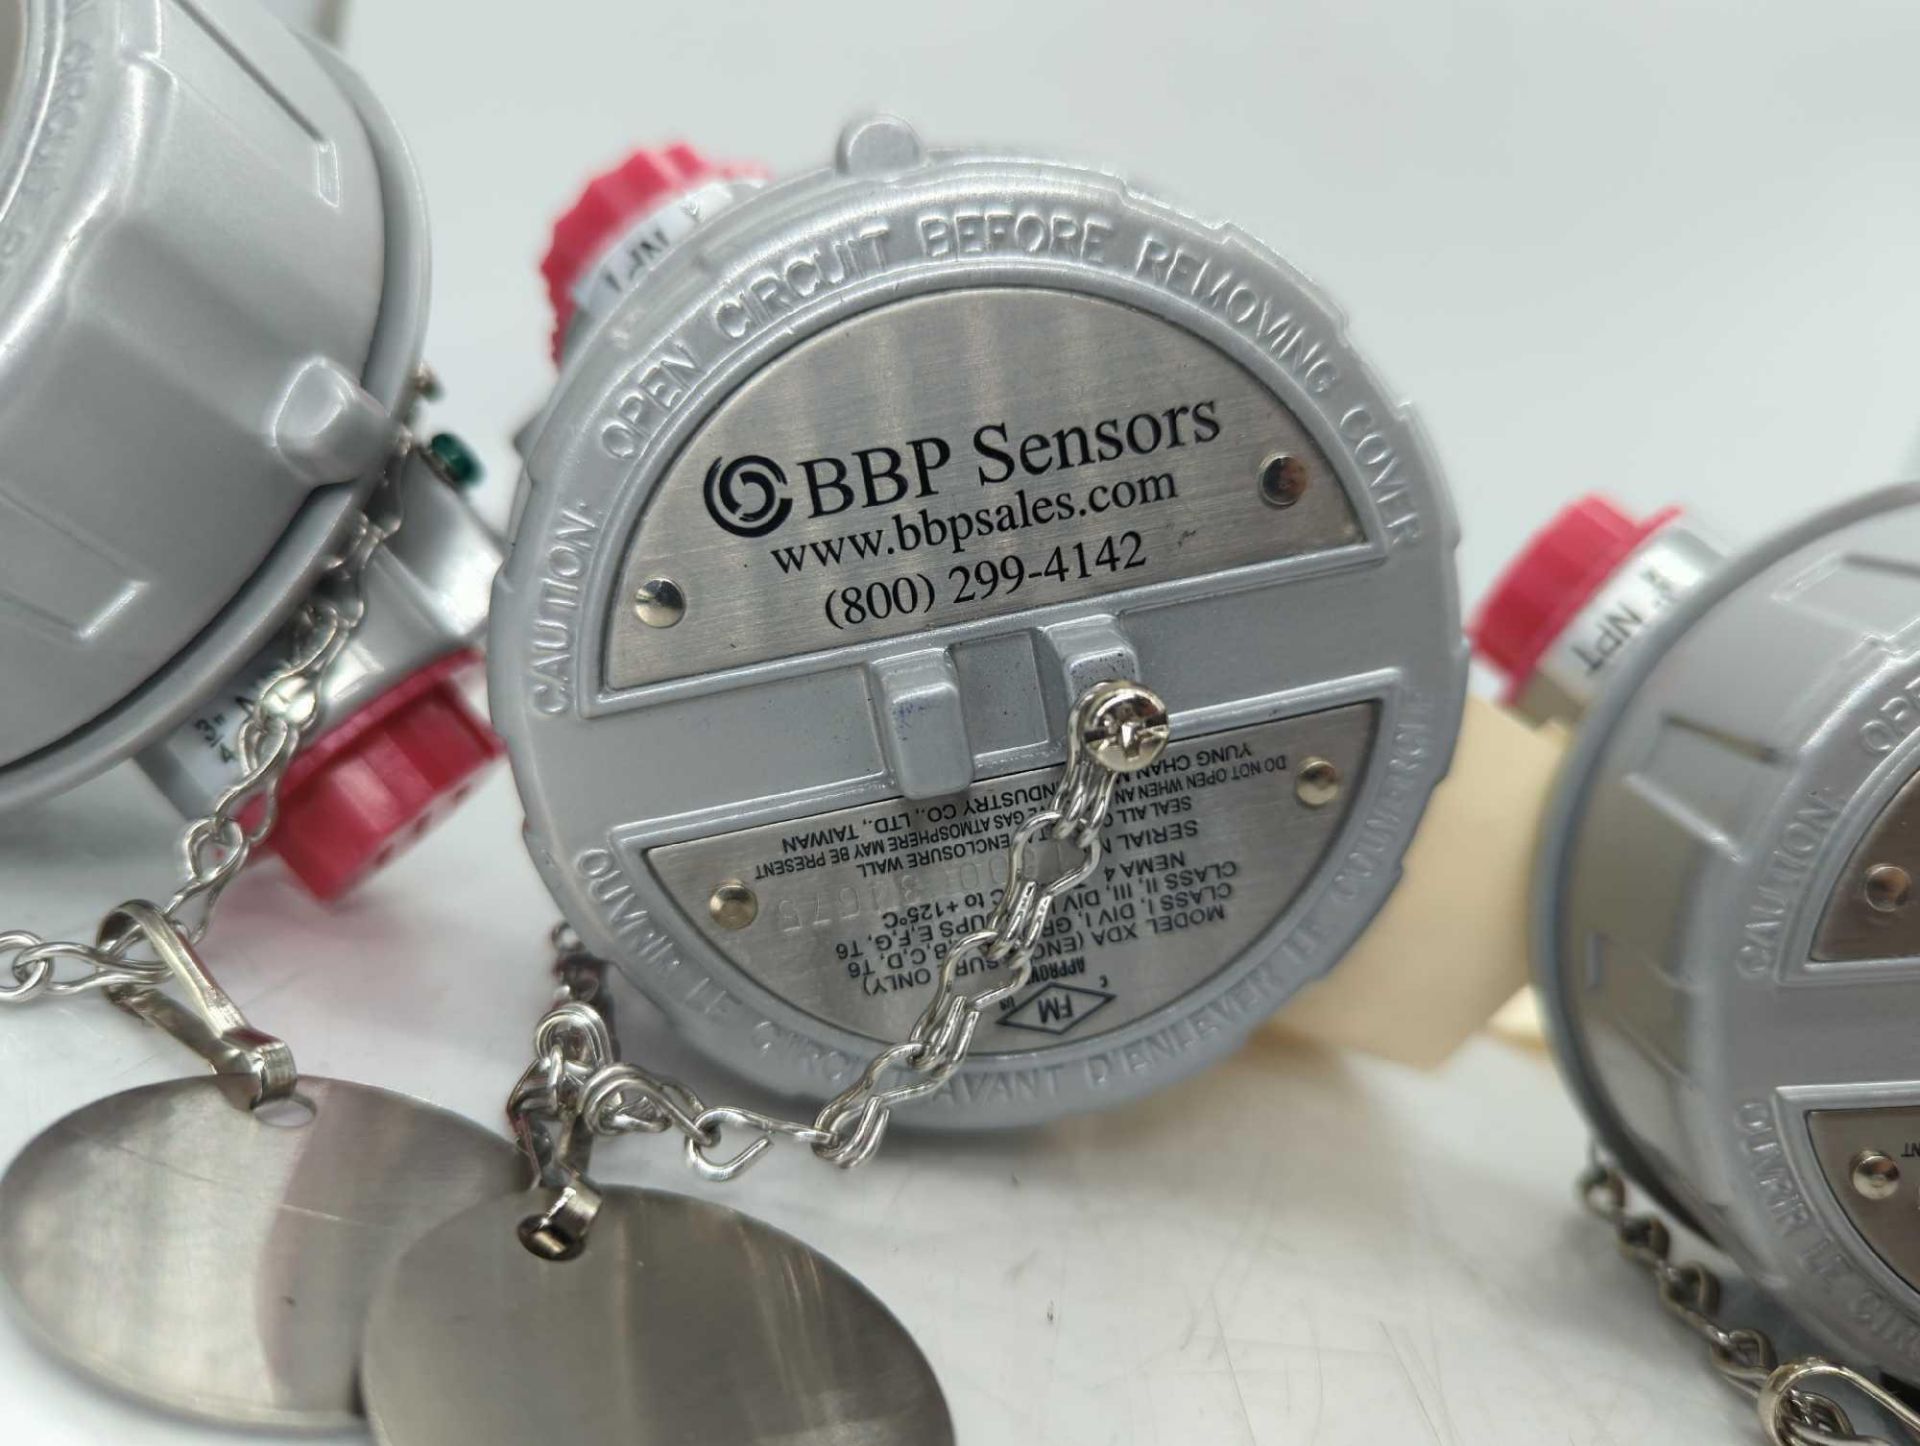 (3) BBP Temperature Sensor